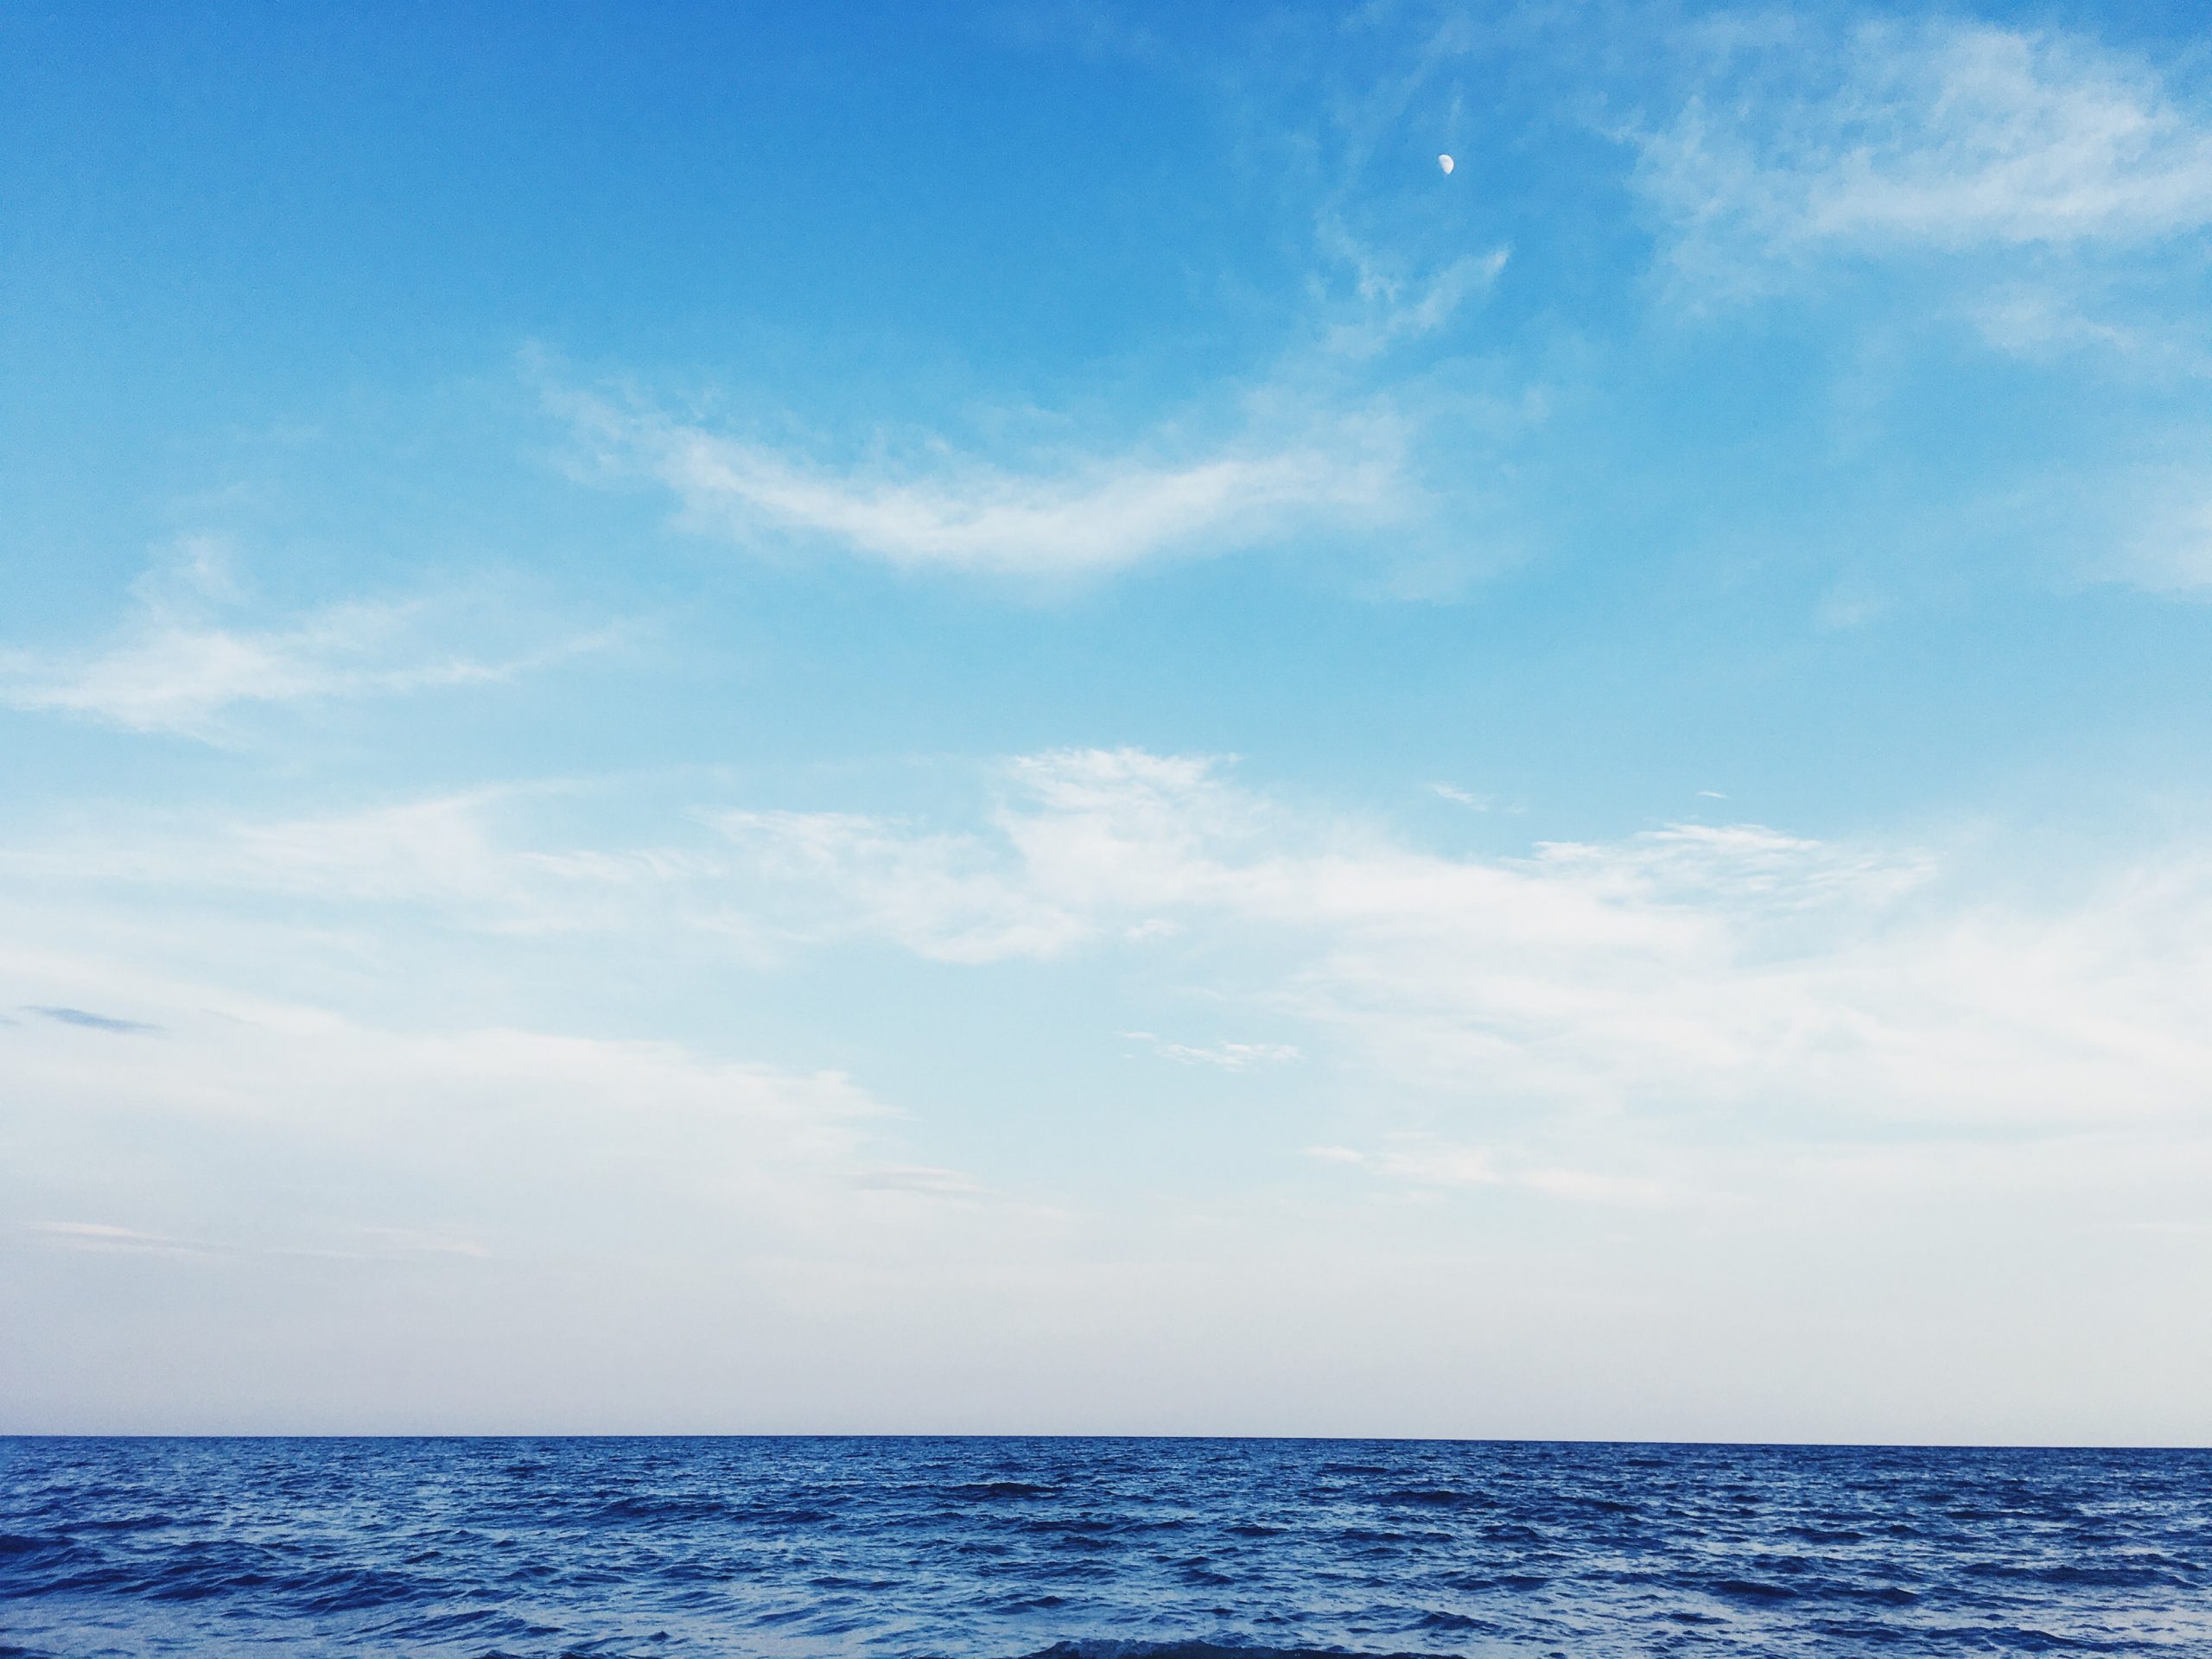 Hãy cùng chiêm ngưỡng ảnh bầu trời biển đẹp, màu xanh ngút trời, tỏa sáng tạo nên một bức tranh vô cùng hoàn hảo. Hình ảnh tuyệt đẹp này chắc chắn sẽ khiến bạn cảm thấy như đang đứng ngay trên bờ biển.